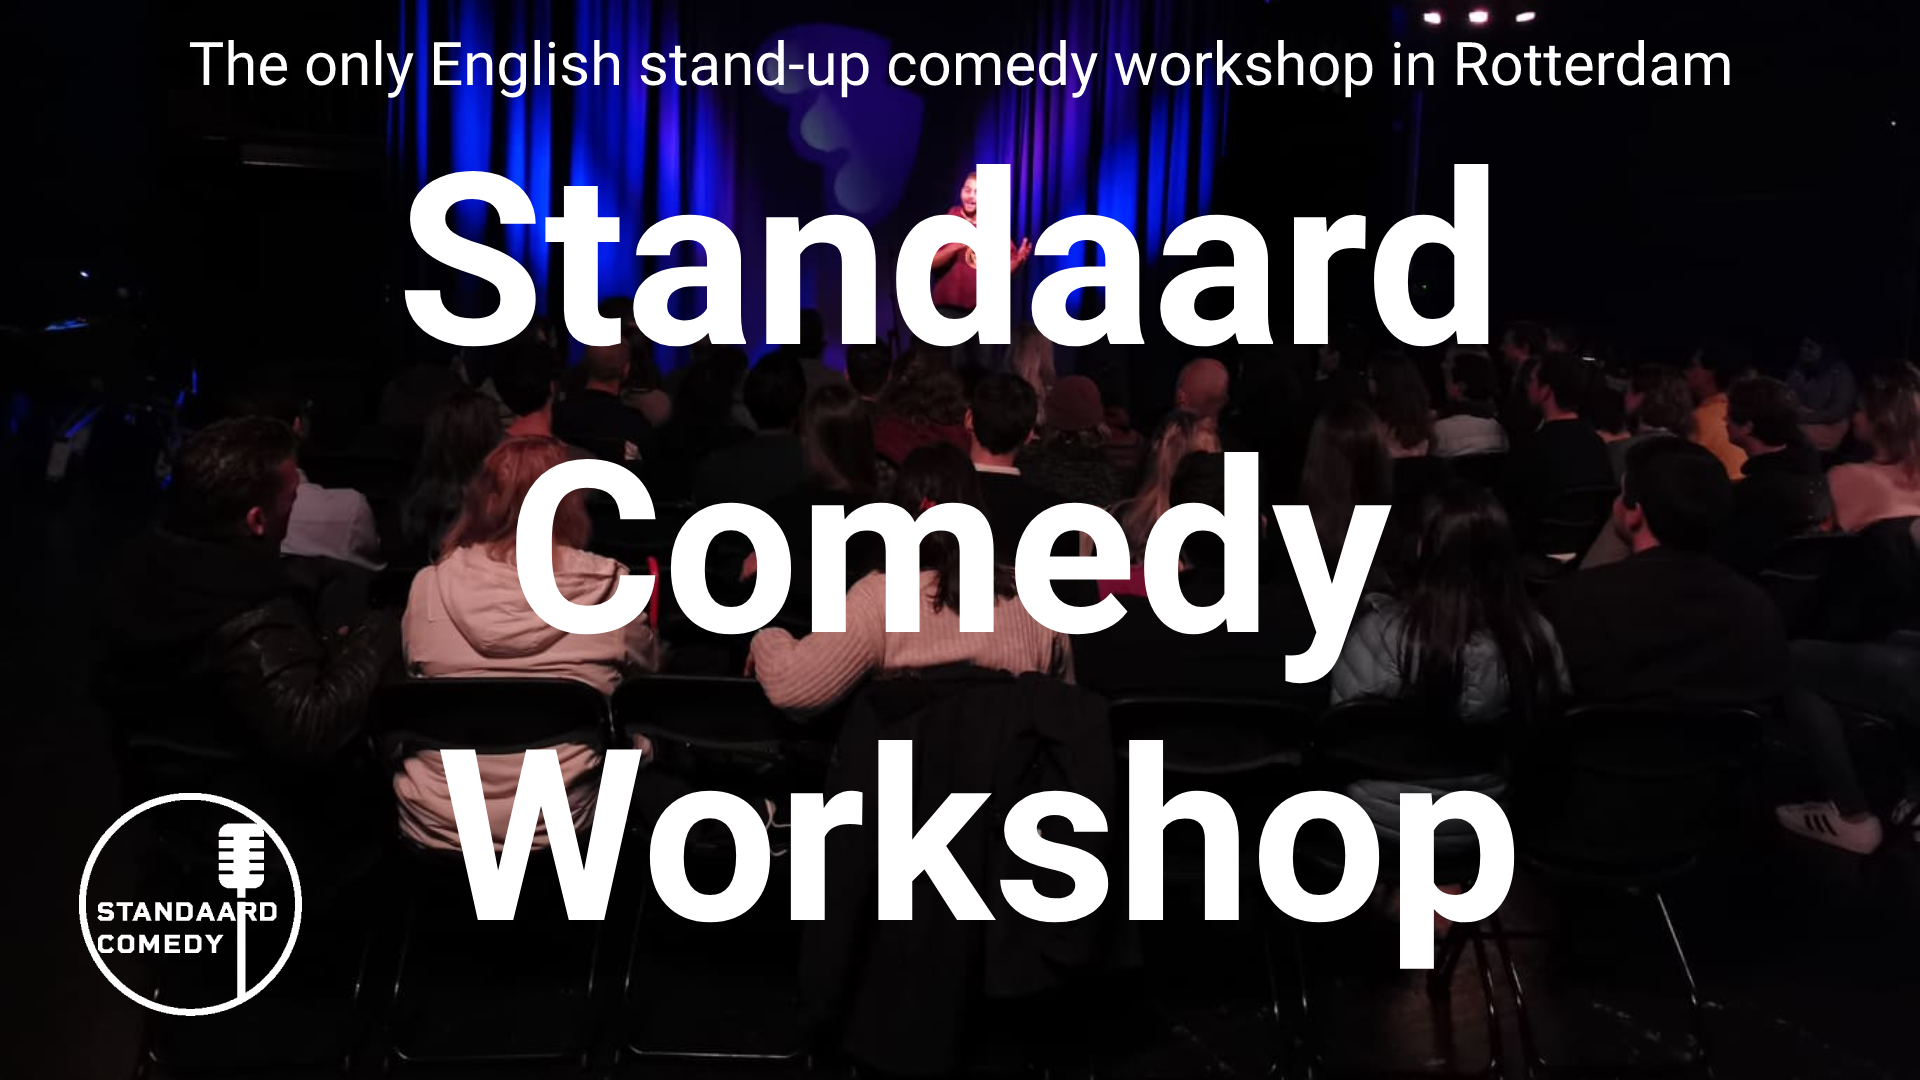 Ticket kopen voor evenement Standaard Comedy Workshop